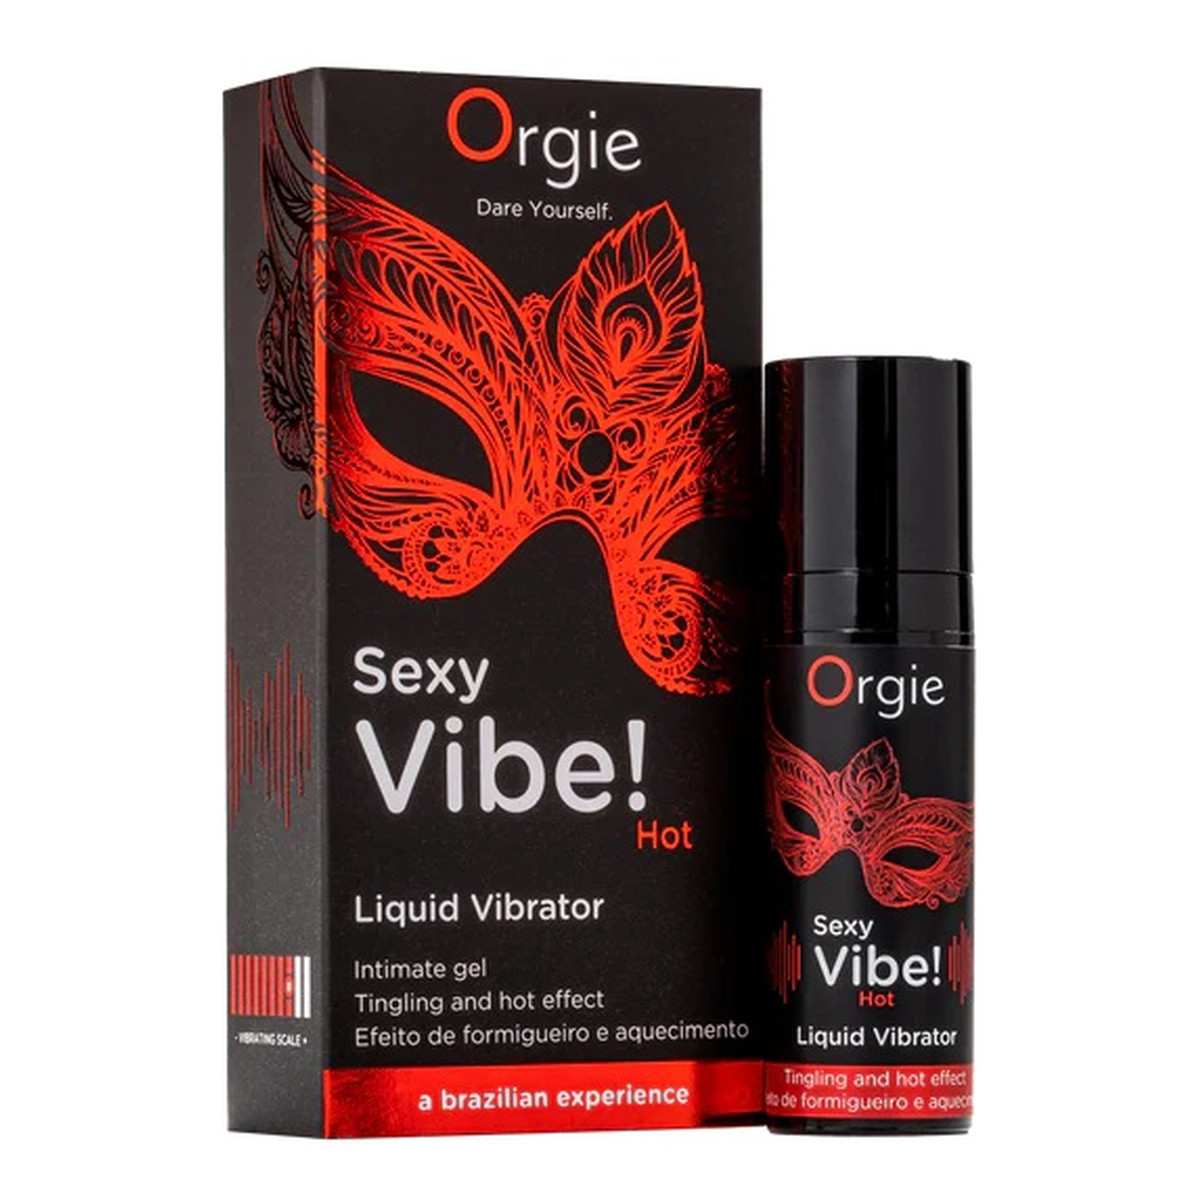 Orgie Sexy Vibe! Liquid Vibrator Hot rozgrzewający Żel stymulujący 15ml